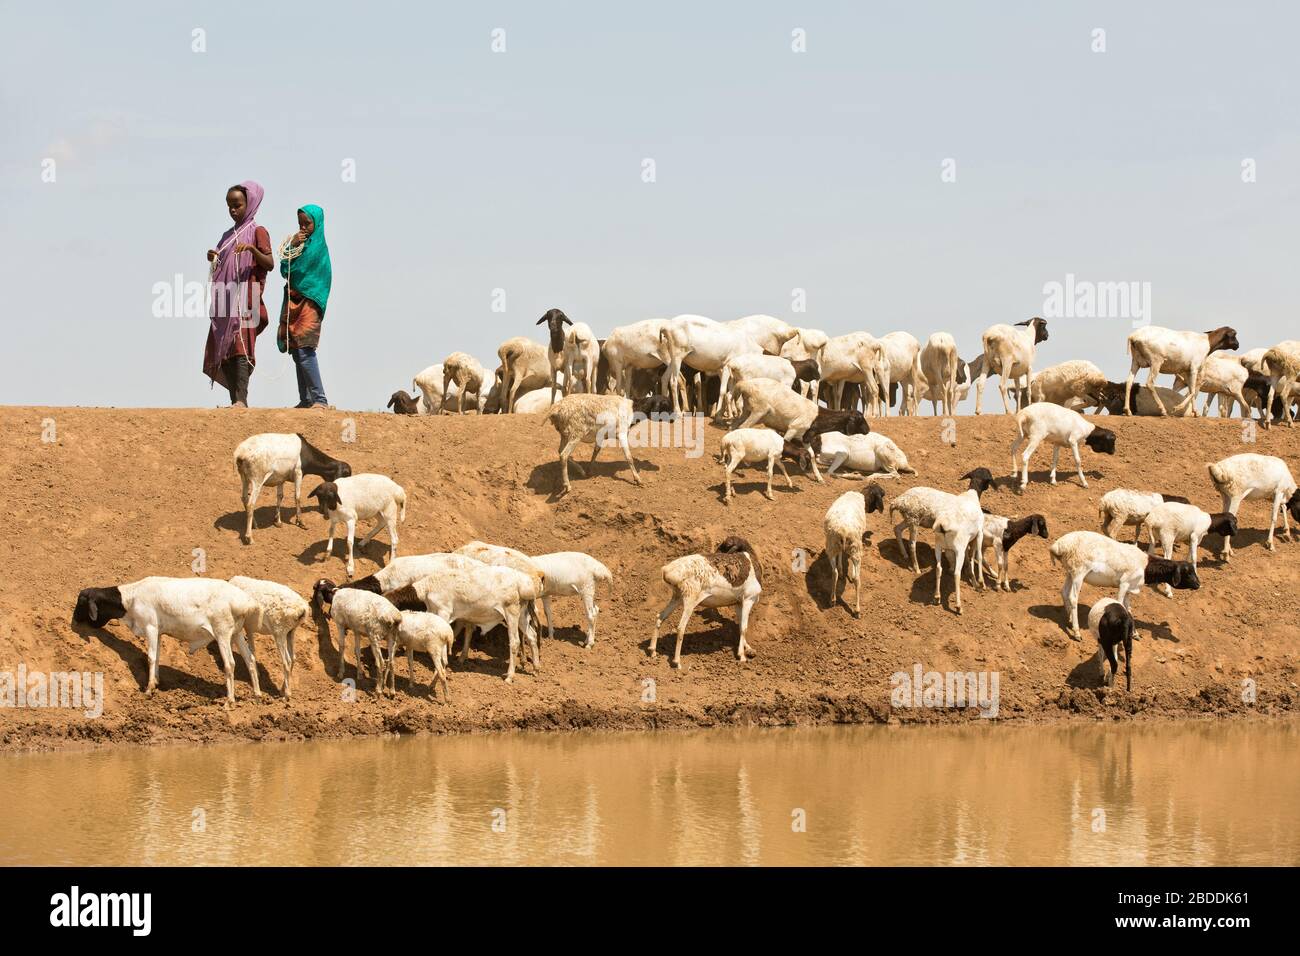 14.11.2019, Gode, Somali-Region, Äthiopien - Mädchen, die eine afrikanische Ziegenherde an einem Wassertrog bewachen. Projektdokumentation der Hilfsorganisation Stockfoto